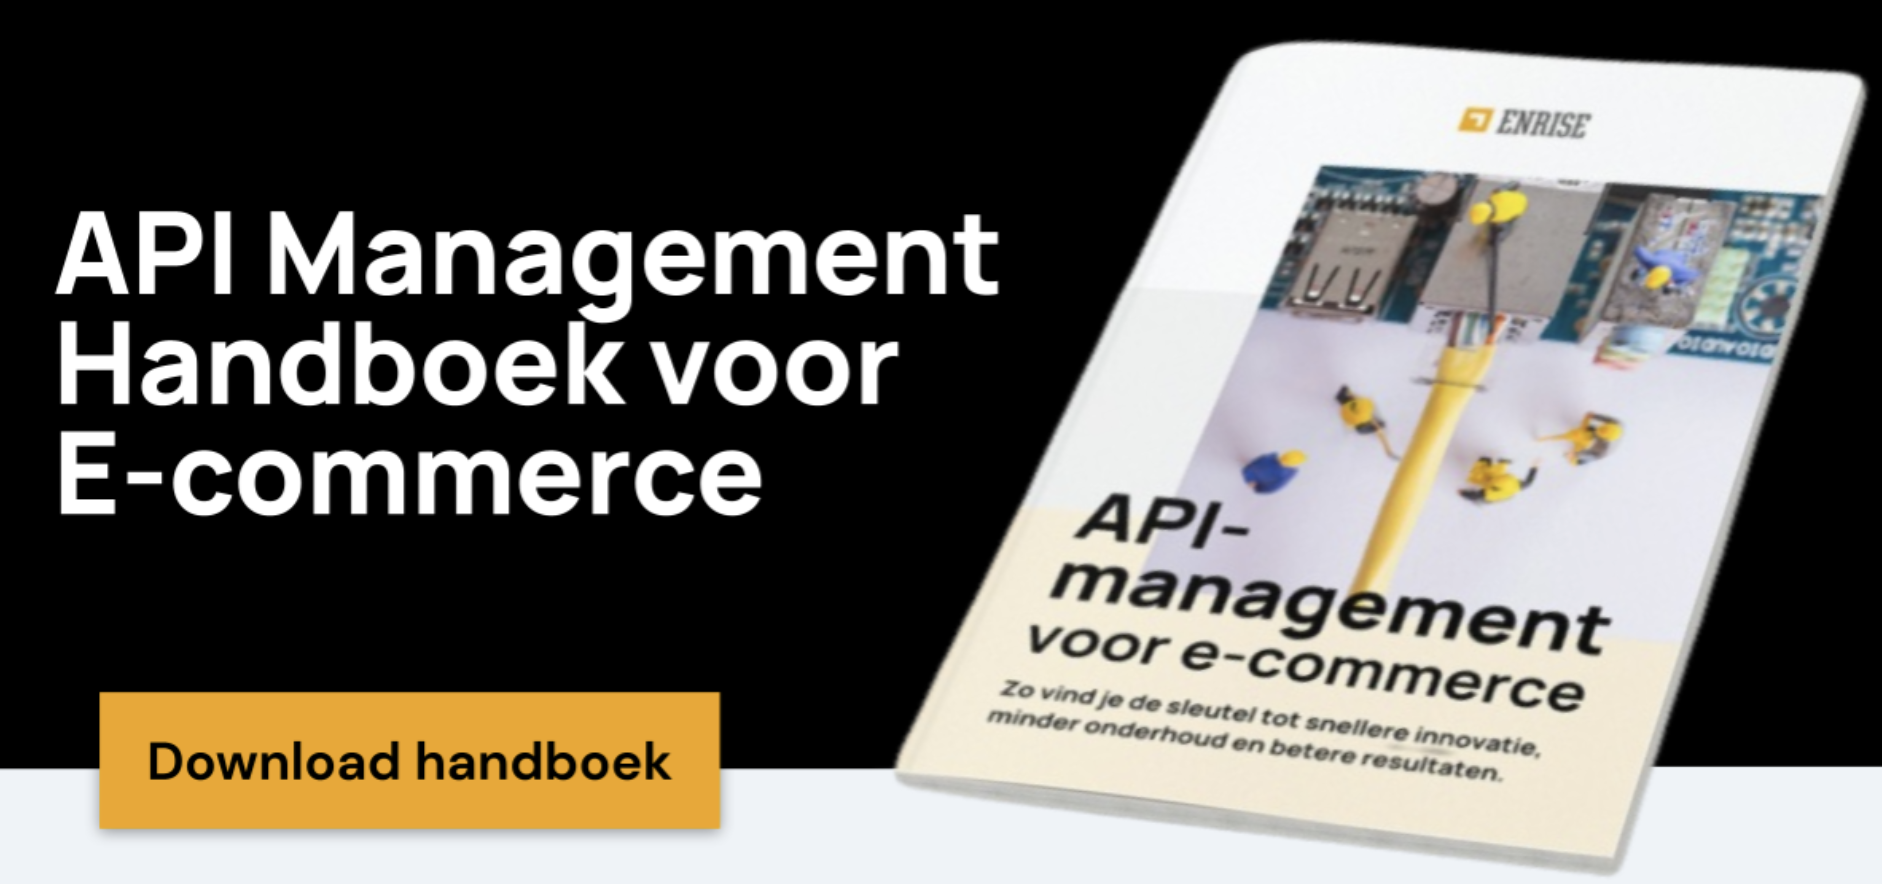 Download nu het API Management Handboek voor E-commerce